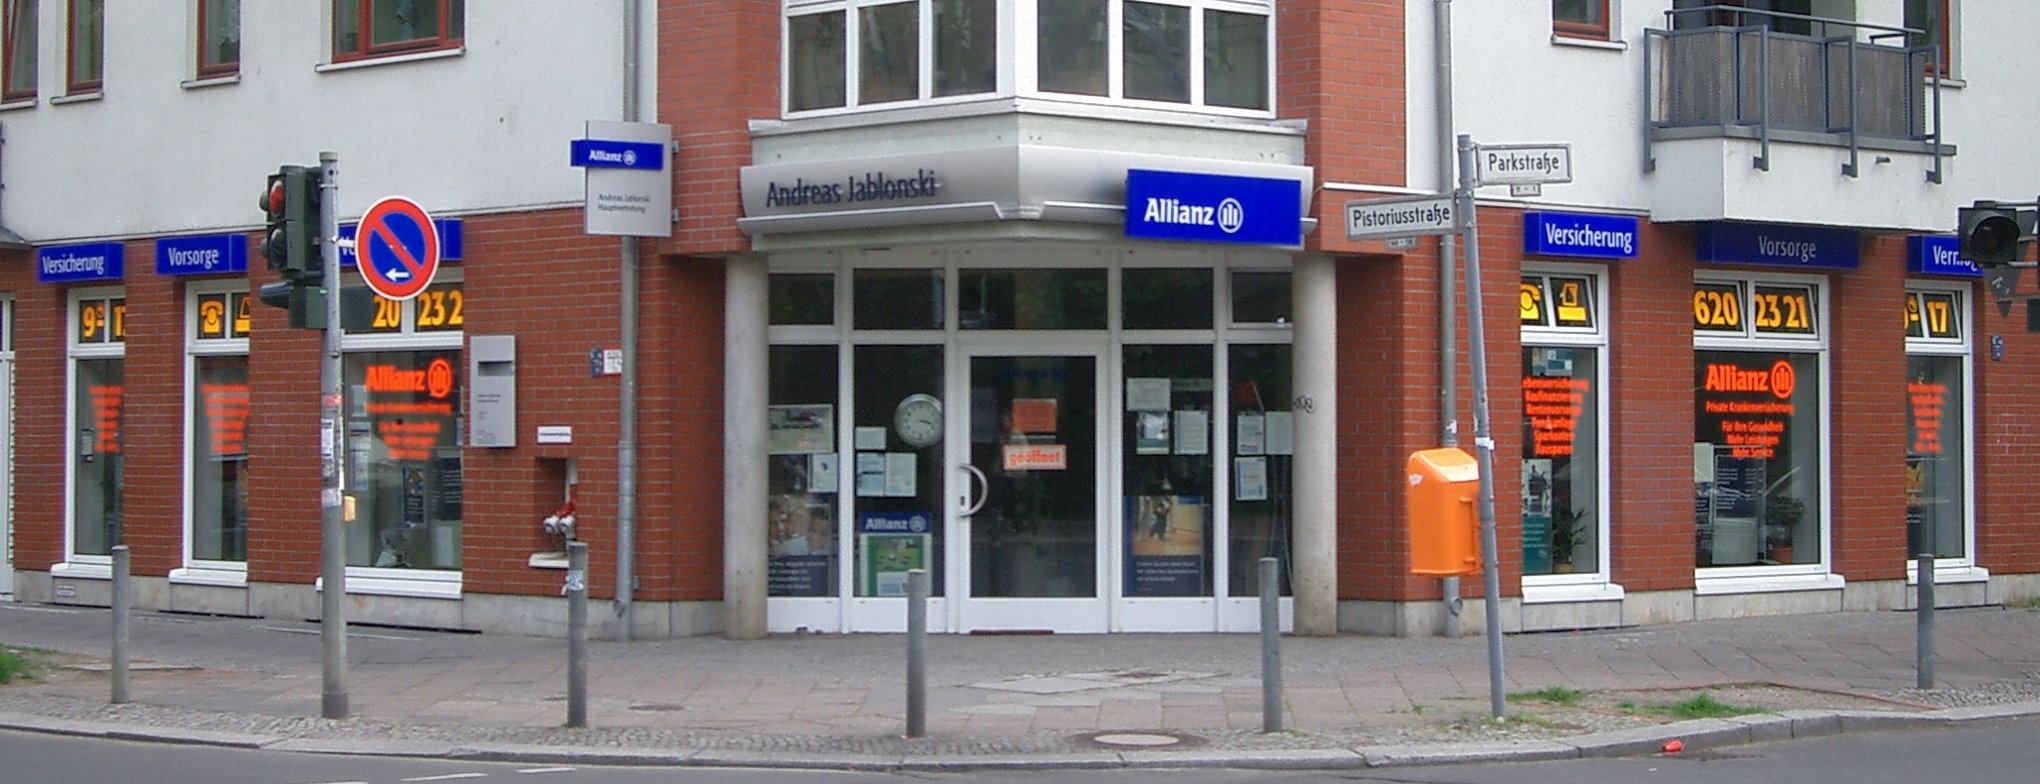 Allianz Versicherung Andreas Jablonski Berlin - Allianz Generalvertretung Andreas Jablonski Berlin